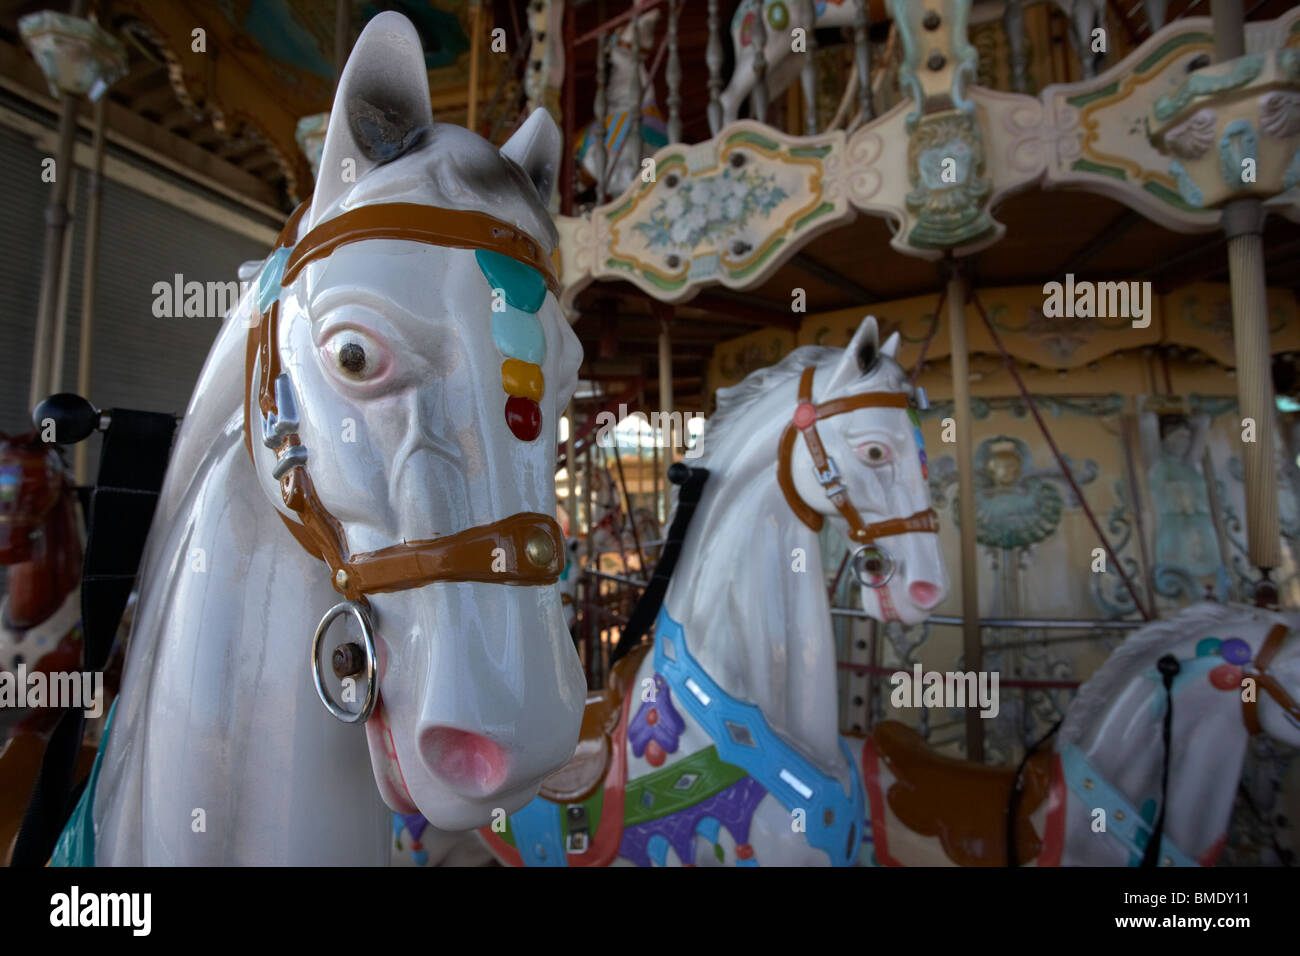 Les chevaux ornés d'un carrousel vide merry-go-round au Royaume-Uni Banque D'Images